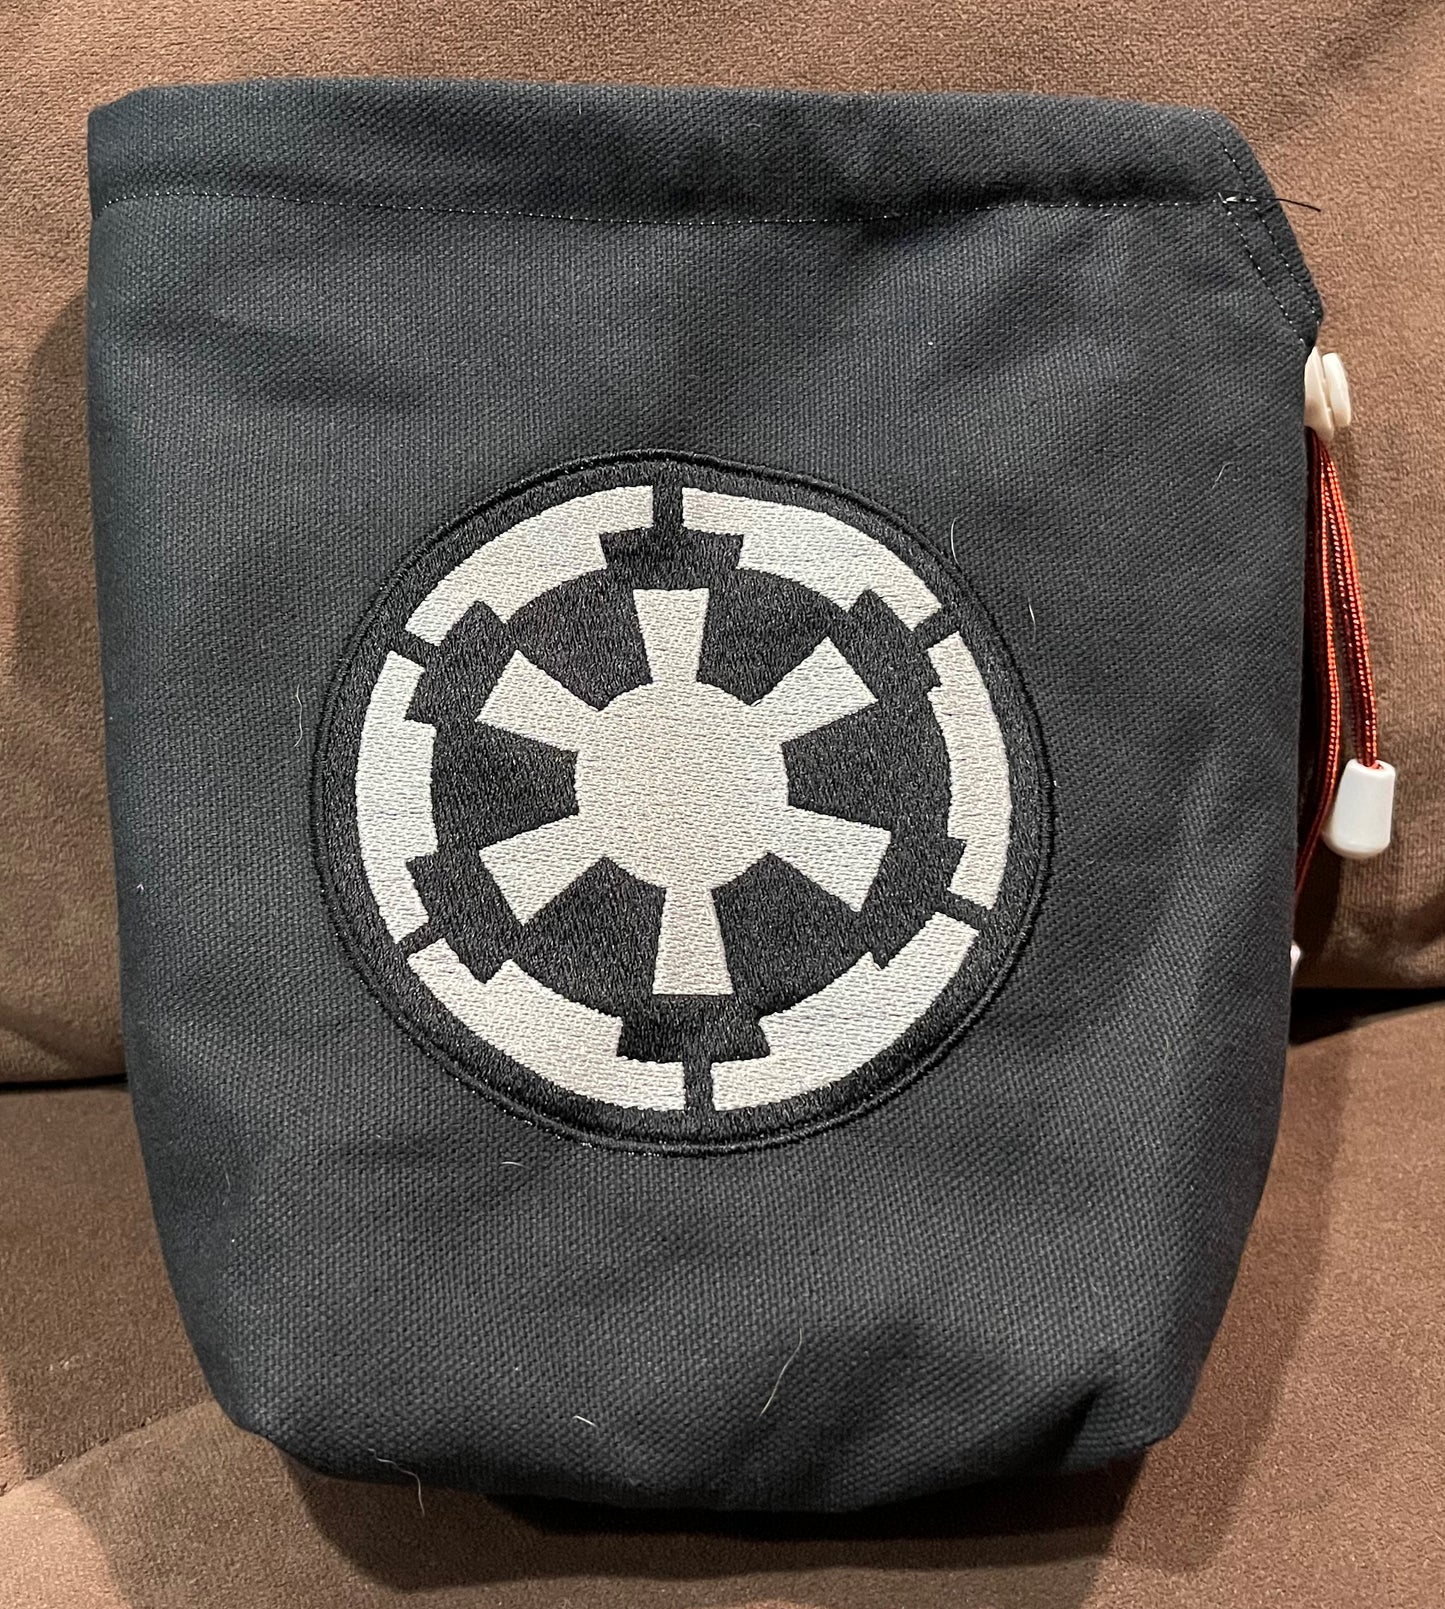 SW Empire Emblem Embroidered Bag-Large